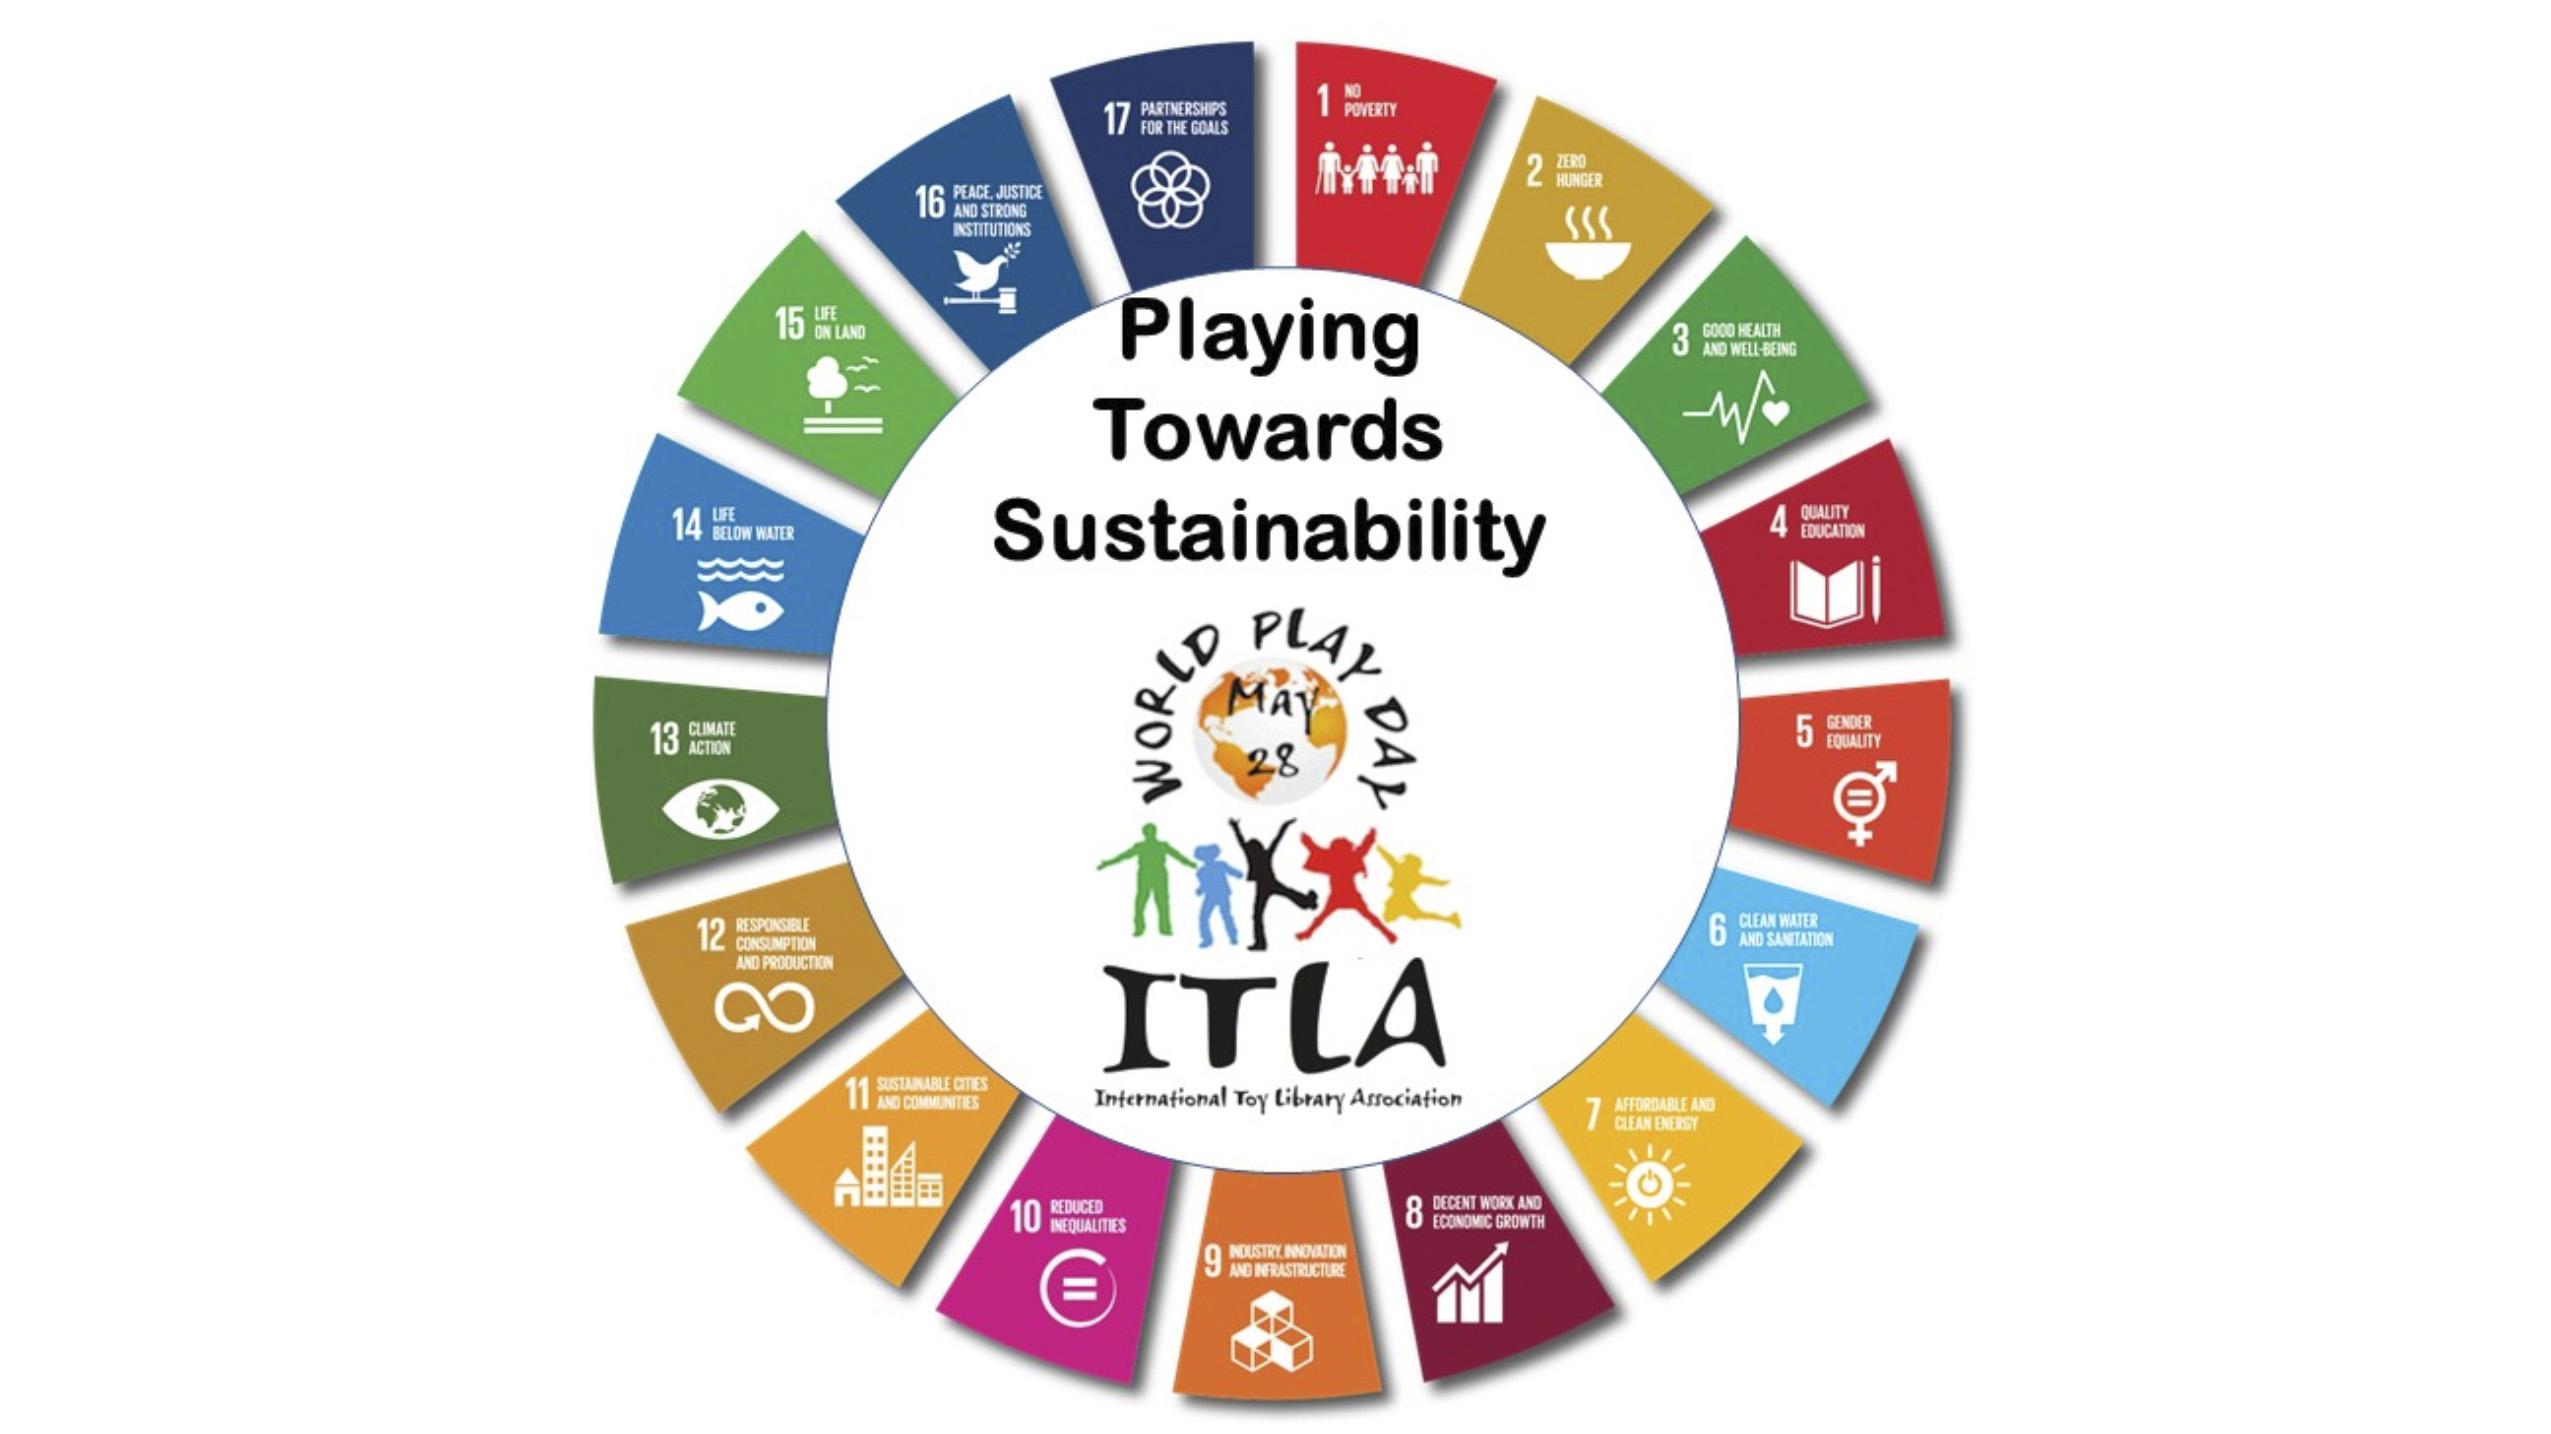 “Jugant cap a la sostenibilitat” al Dia Internacional del Joc